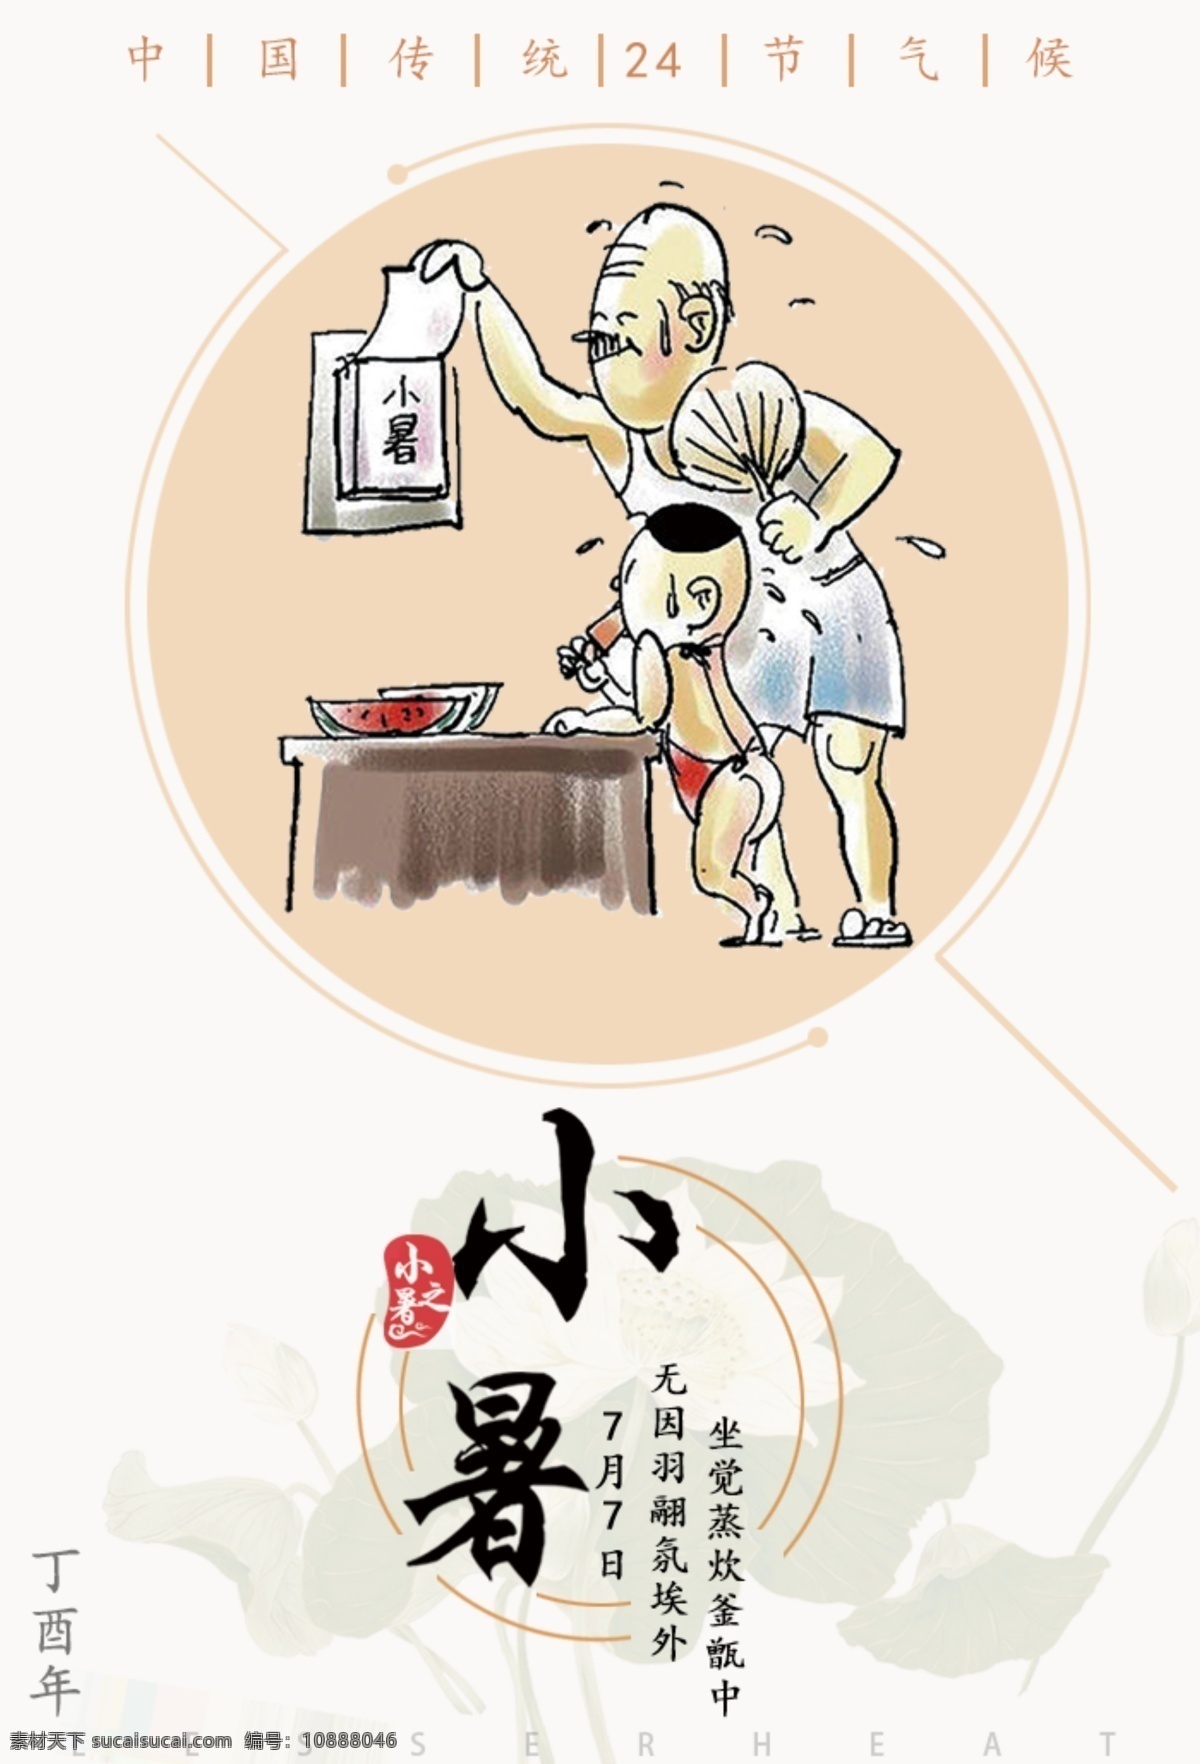 小暑 海报 中国 传统 节气 24节气海报 小暑海报 夏日 老头素材 简单线条 夏天到了 简介创意 水墨 传统雨水节气 节气文化